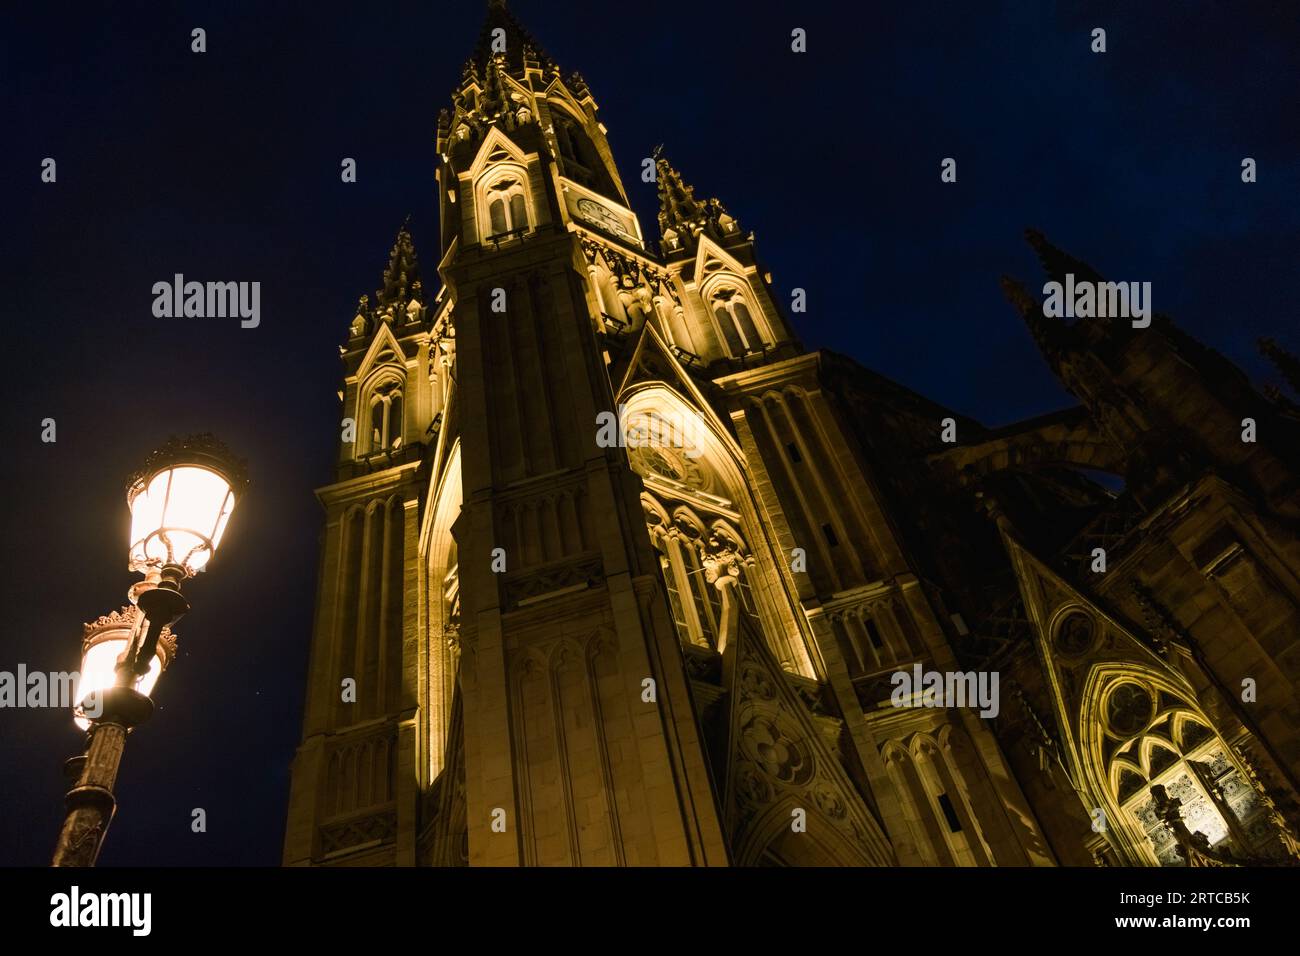 Die Kathedrale von San Sebastian ist nachts auf geisterhafte Weise beleuchtet. Stockfoto